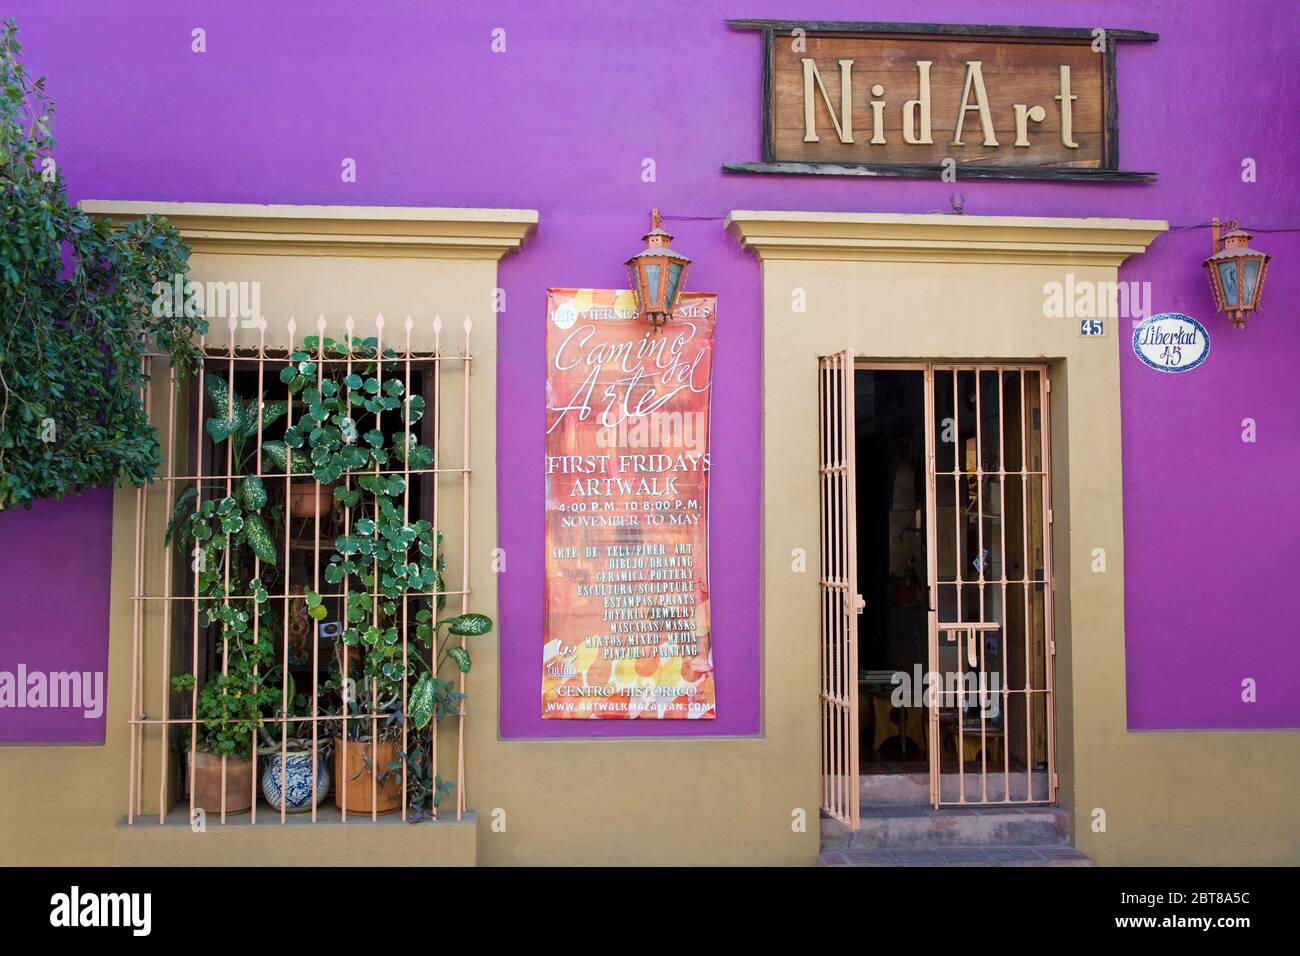 Nid Art Gallery, Old Town District, Mazatlan, Sinaloa State, Mexico Stock Photo